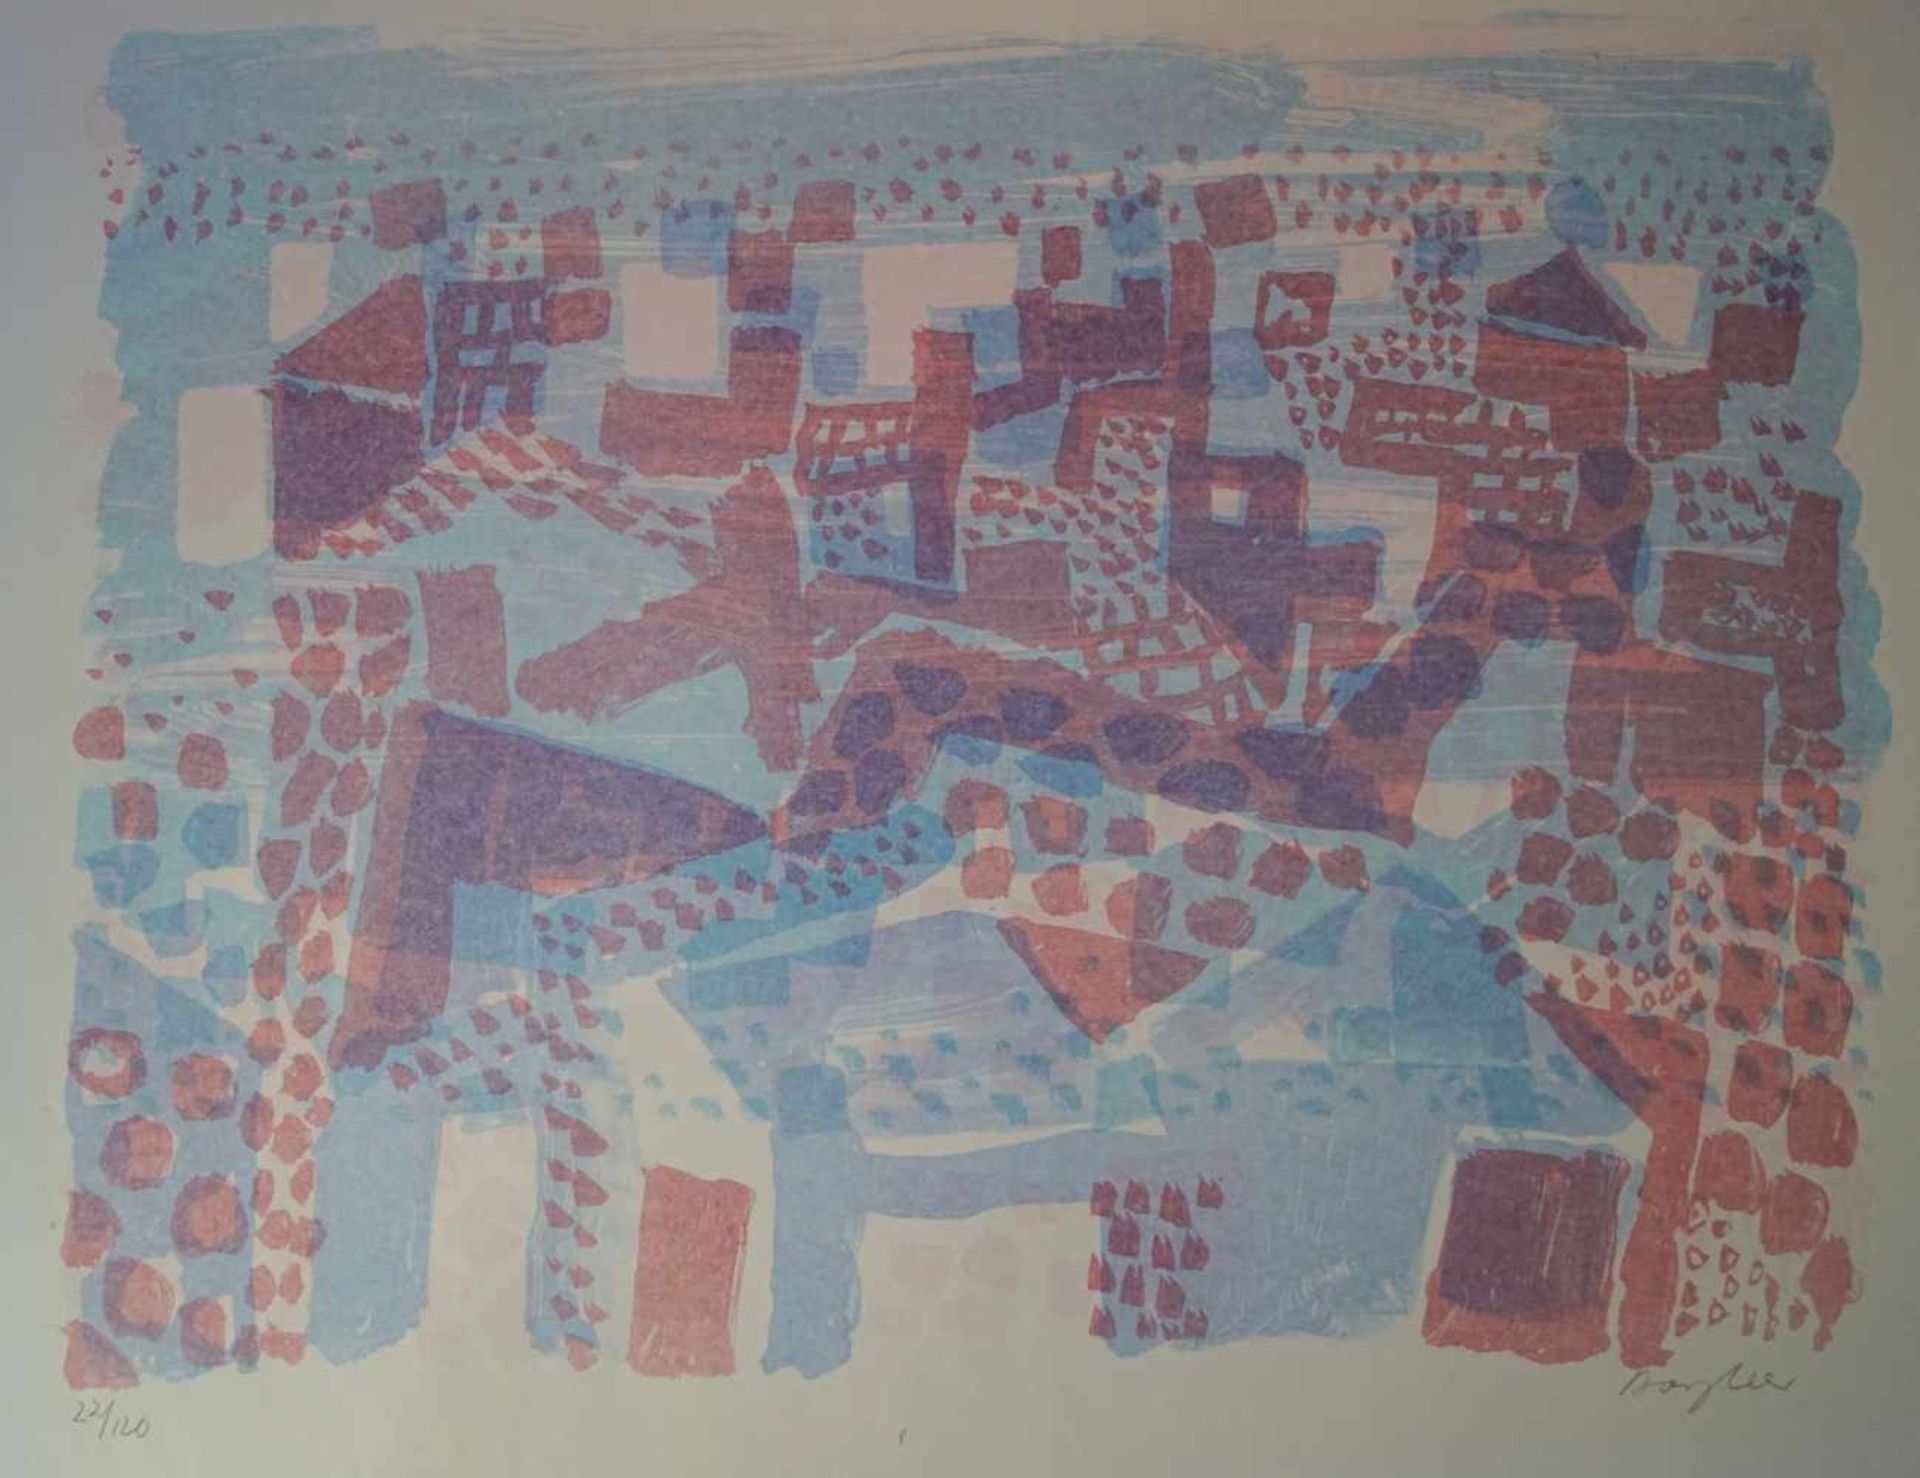 Bargheer: Mappenwerk bez. "Ischia" Mit 10 originalen Farblithographien auf Bütten, jeweils - Image 9 of 10